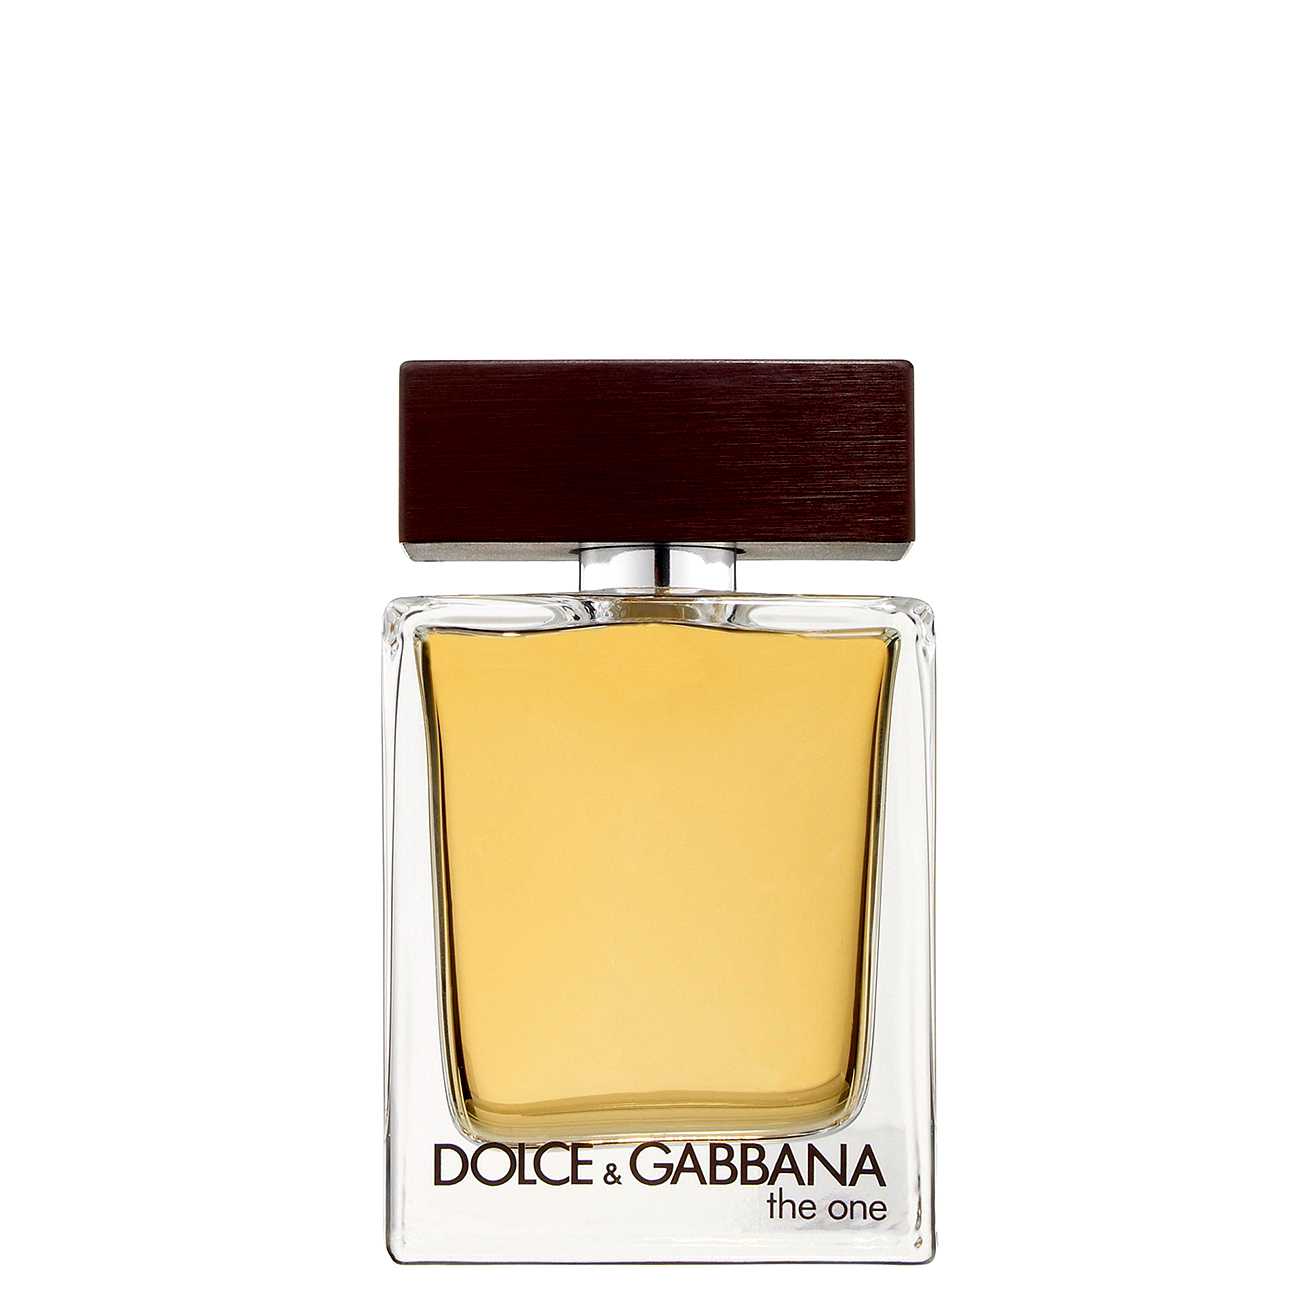 THE ONE Dolce & Gabbana bestvalue.eu imagine noua